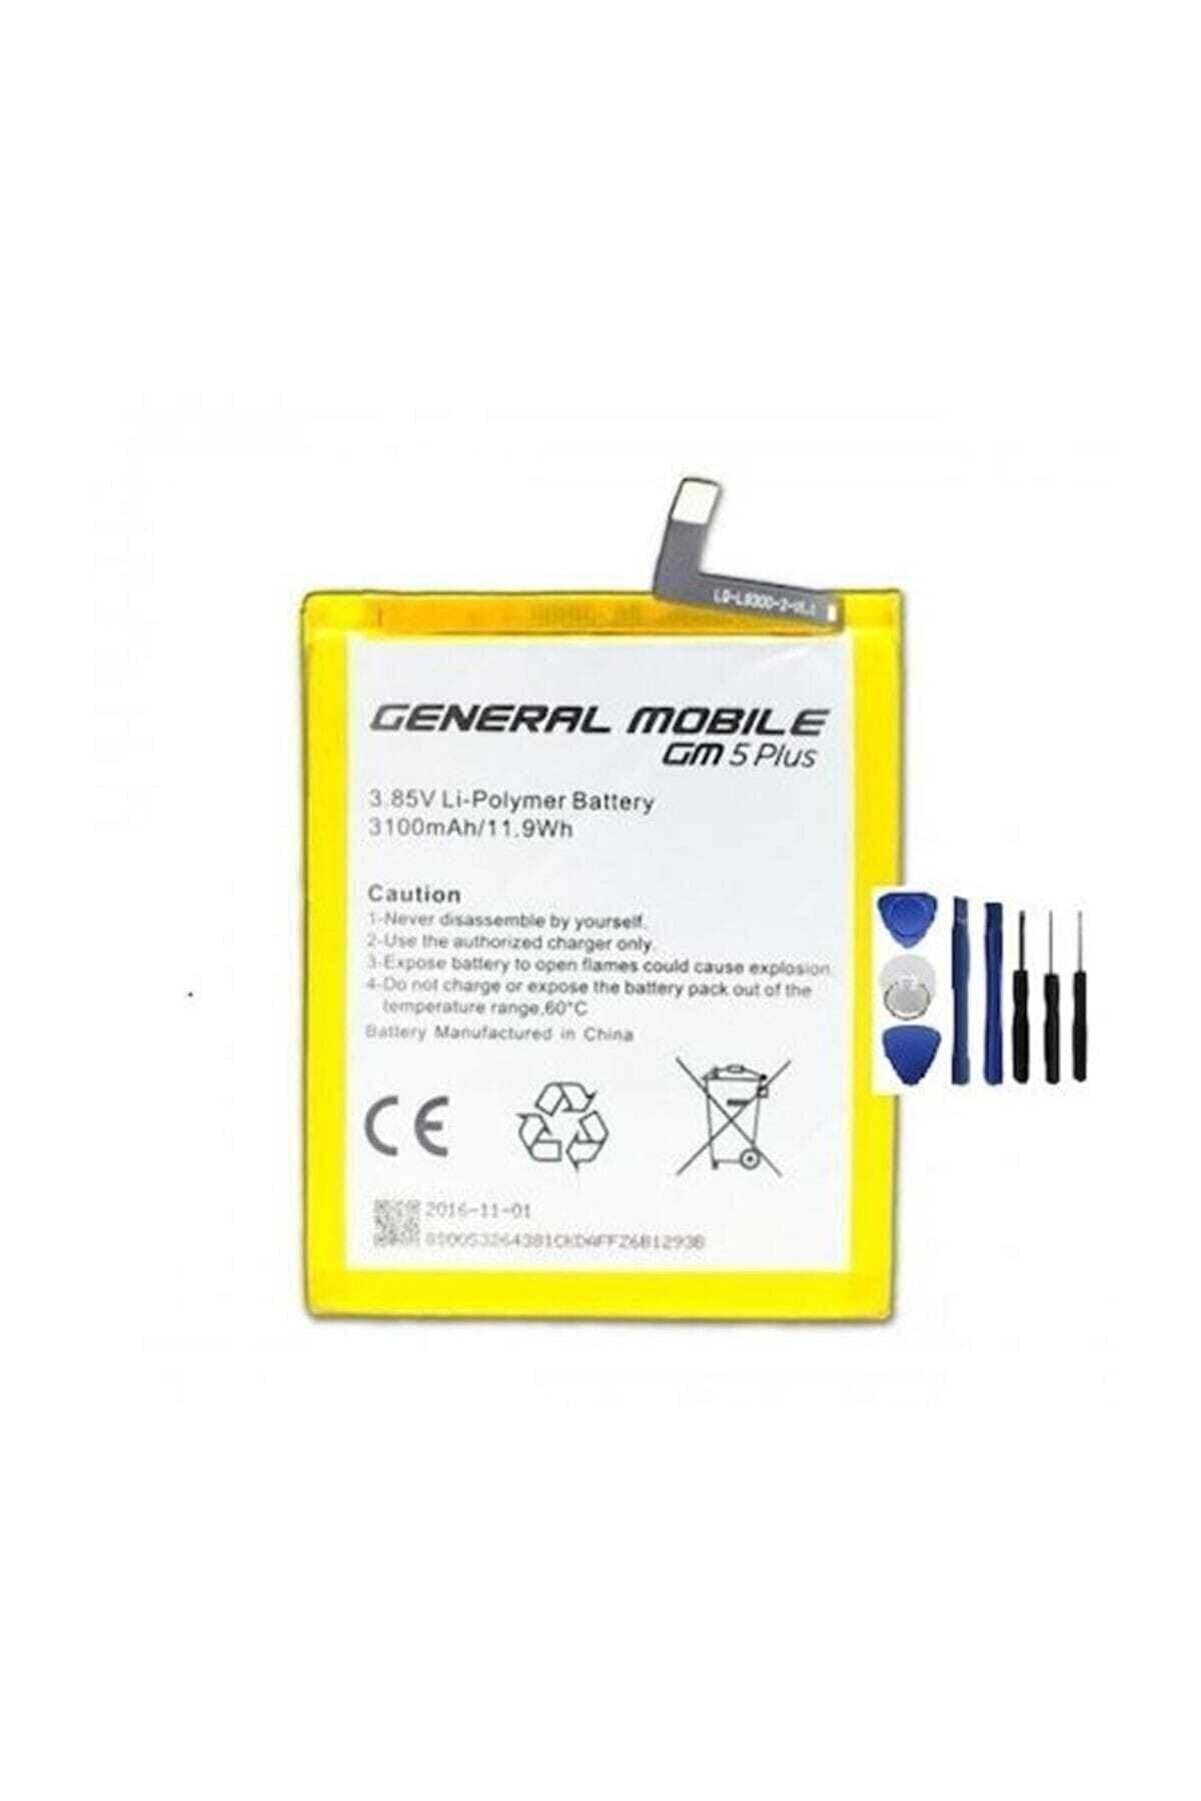 General Mobile Discovery Gm 5 Plus Batarya Pil ve Tamir Seti